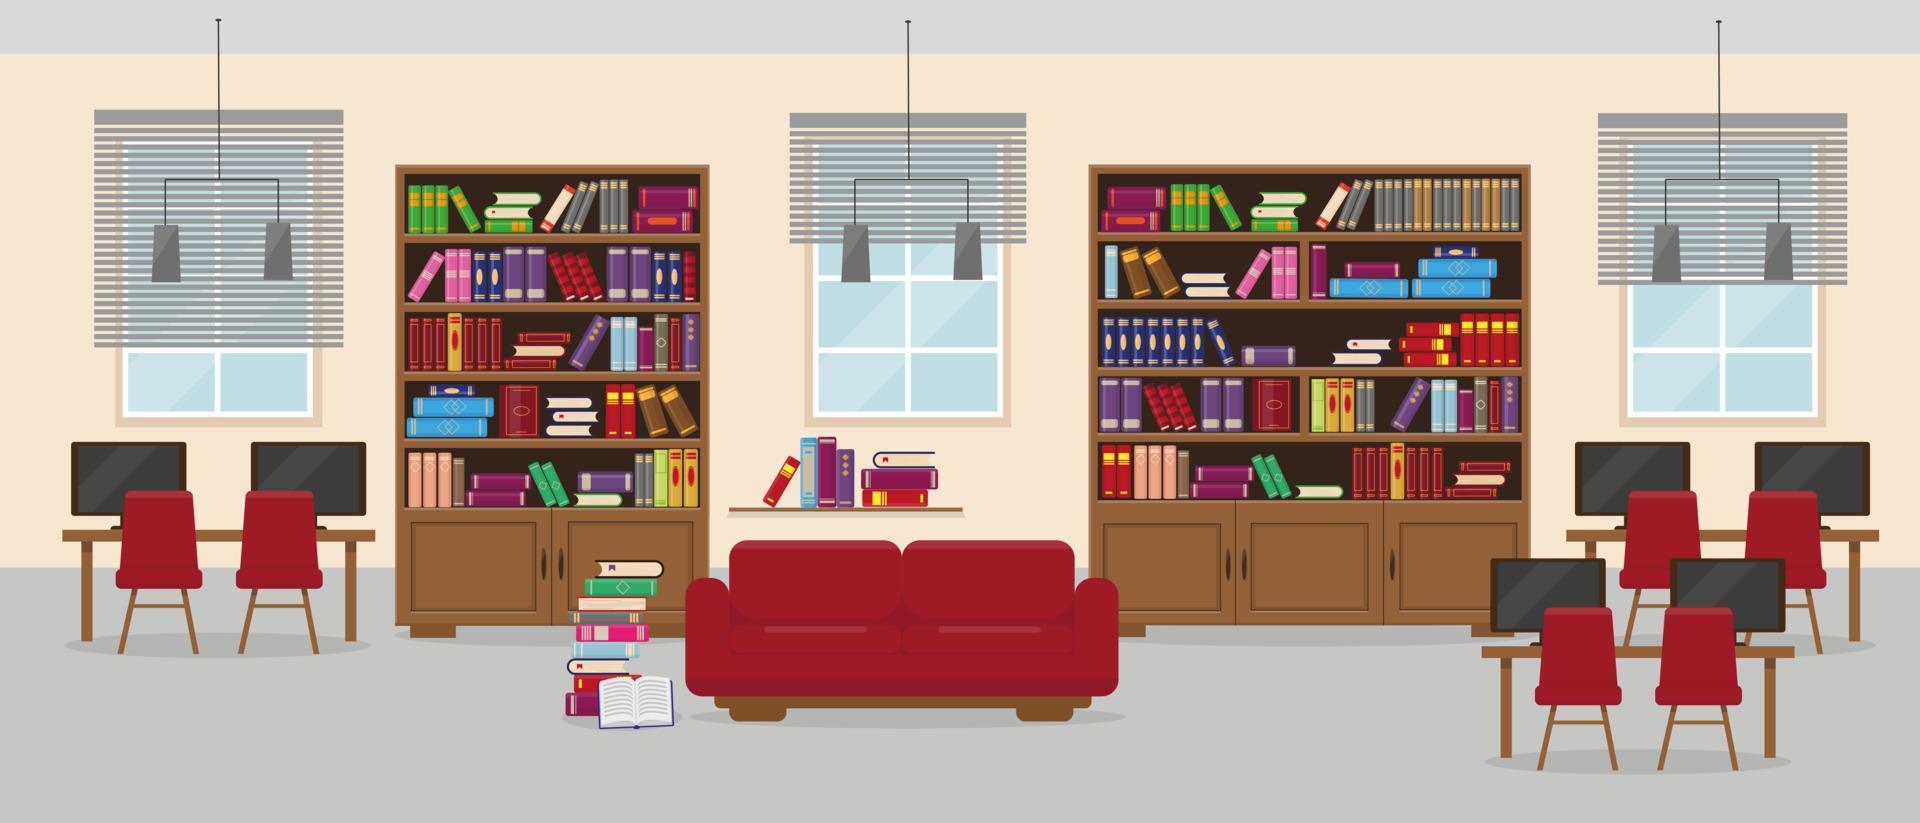 intérieur détaillé de la bibliothèque dans un style plat. meubles et livres dans une chambre moderne avec fenêtres et lampes. illustration vectorielle. vecteur